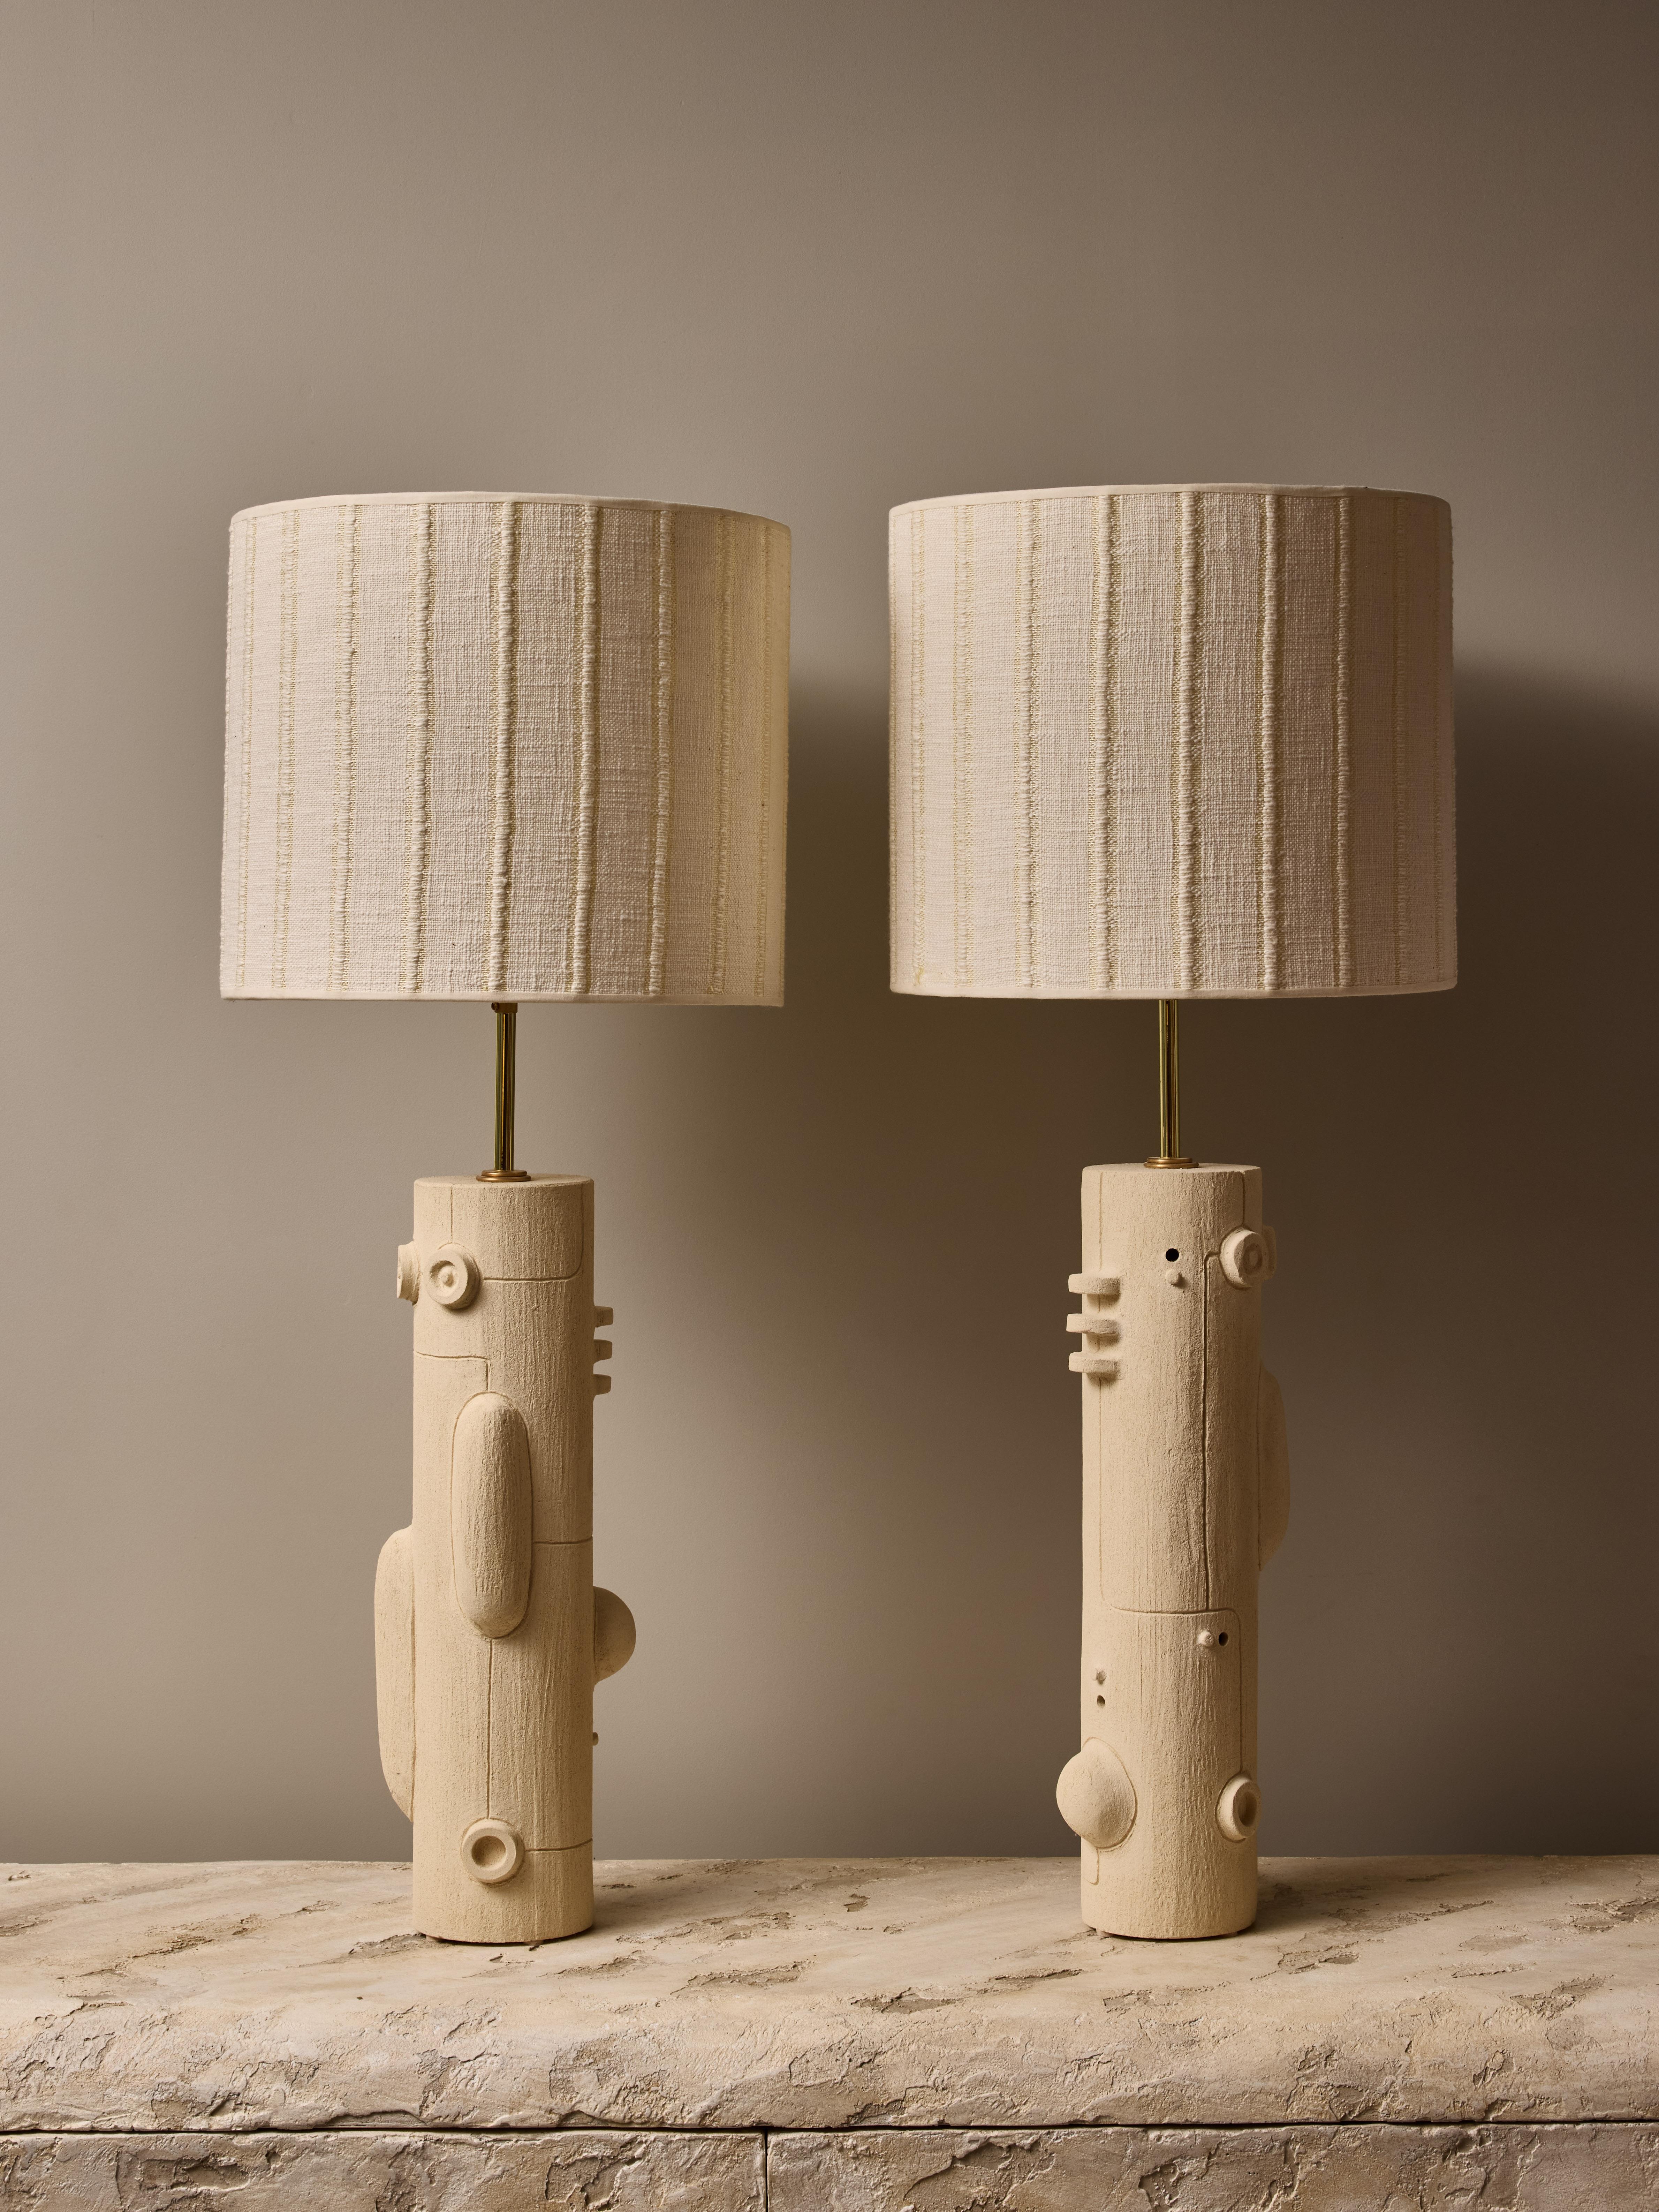 Paire de lampes de table en céramique de la talentueuse artiste contemporaine française Olivia Cognet.

Ces lampes fines de forme tubulaire ont un design de labyrinthe en miroir avec des formes géométriques douces et des lignes fines, une